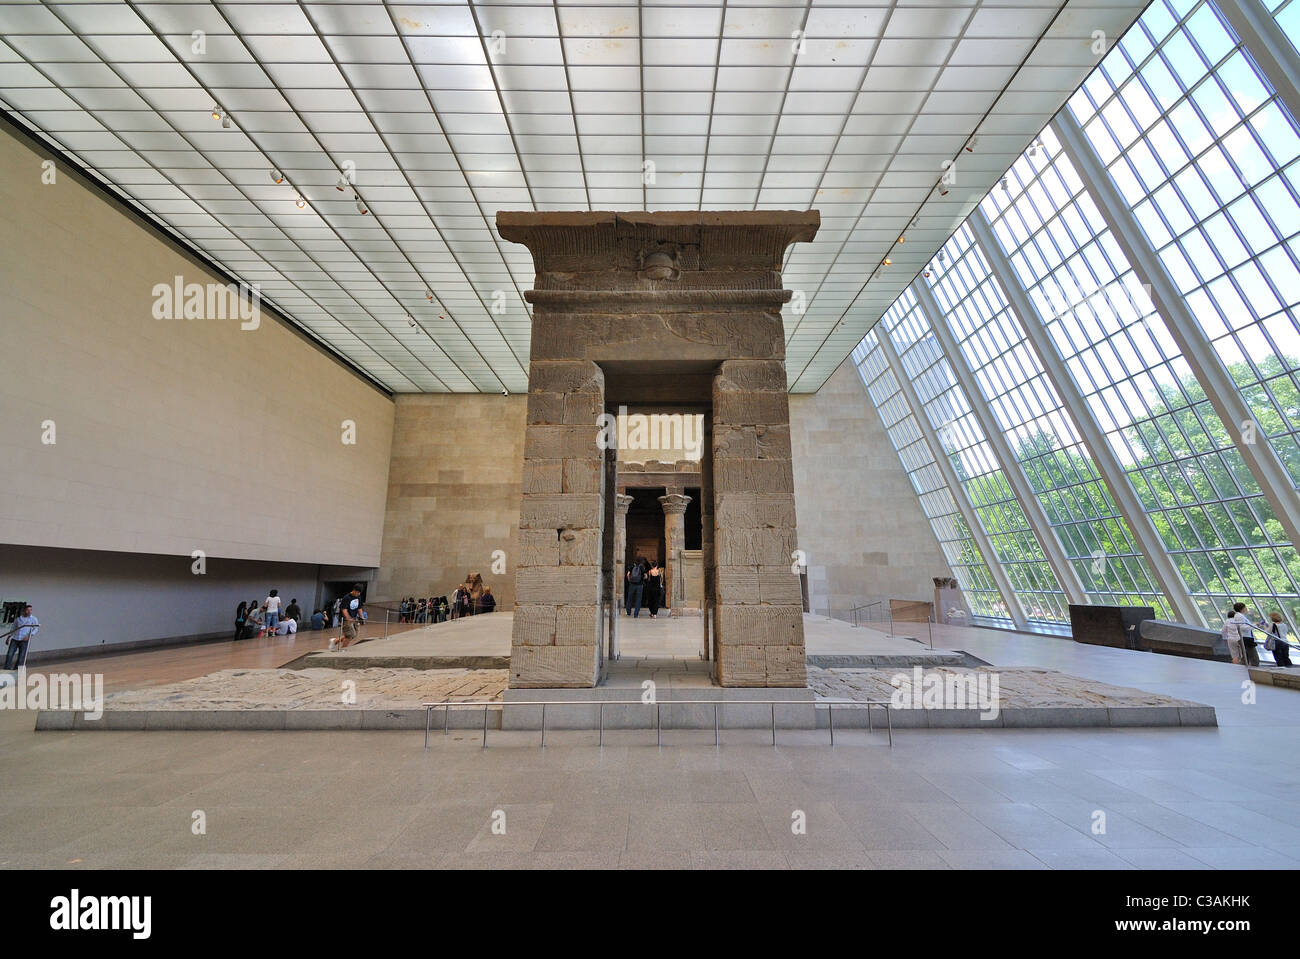 Templo de Dendur es un templo egipcio construido alrededor de 15 BC. Ahora se encuentra en el Museo Metropolitano de Arte de Nueva York. Foto de stock